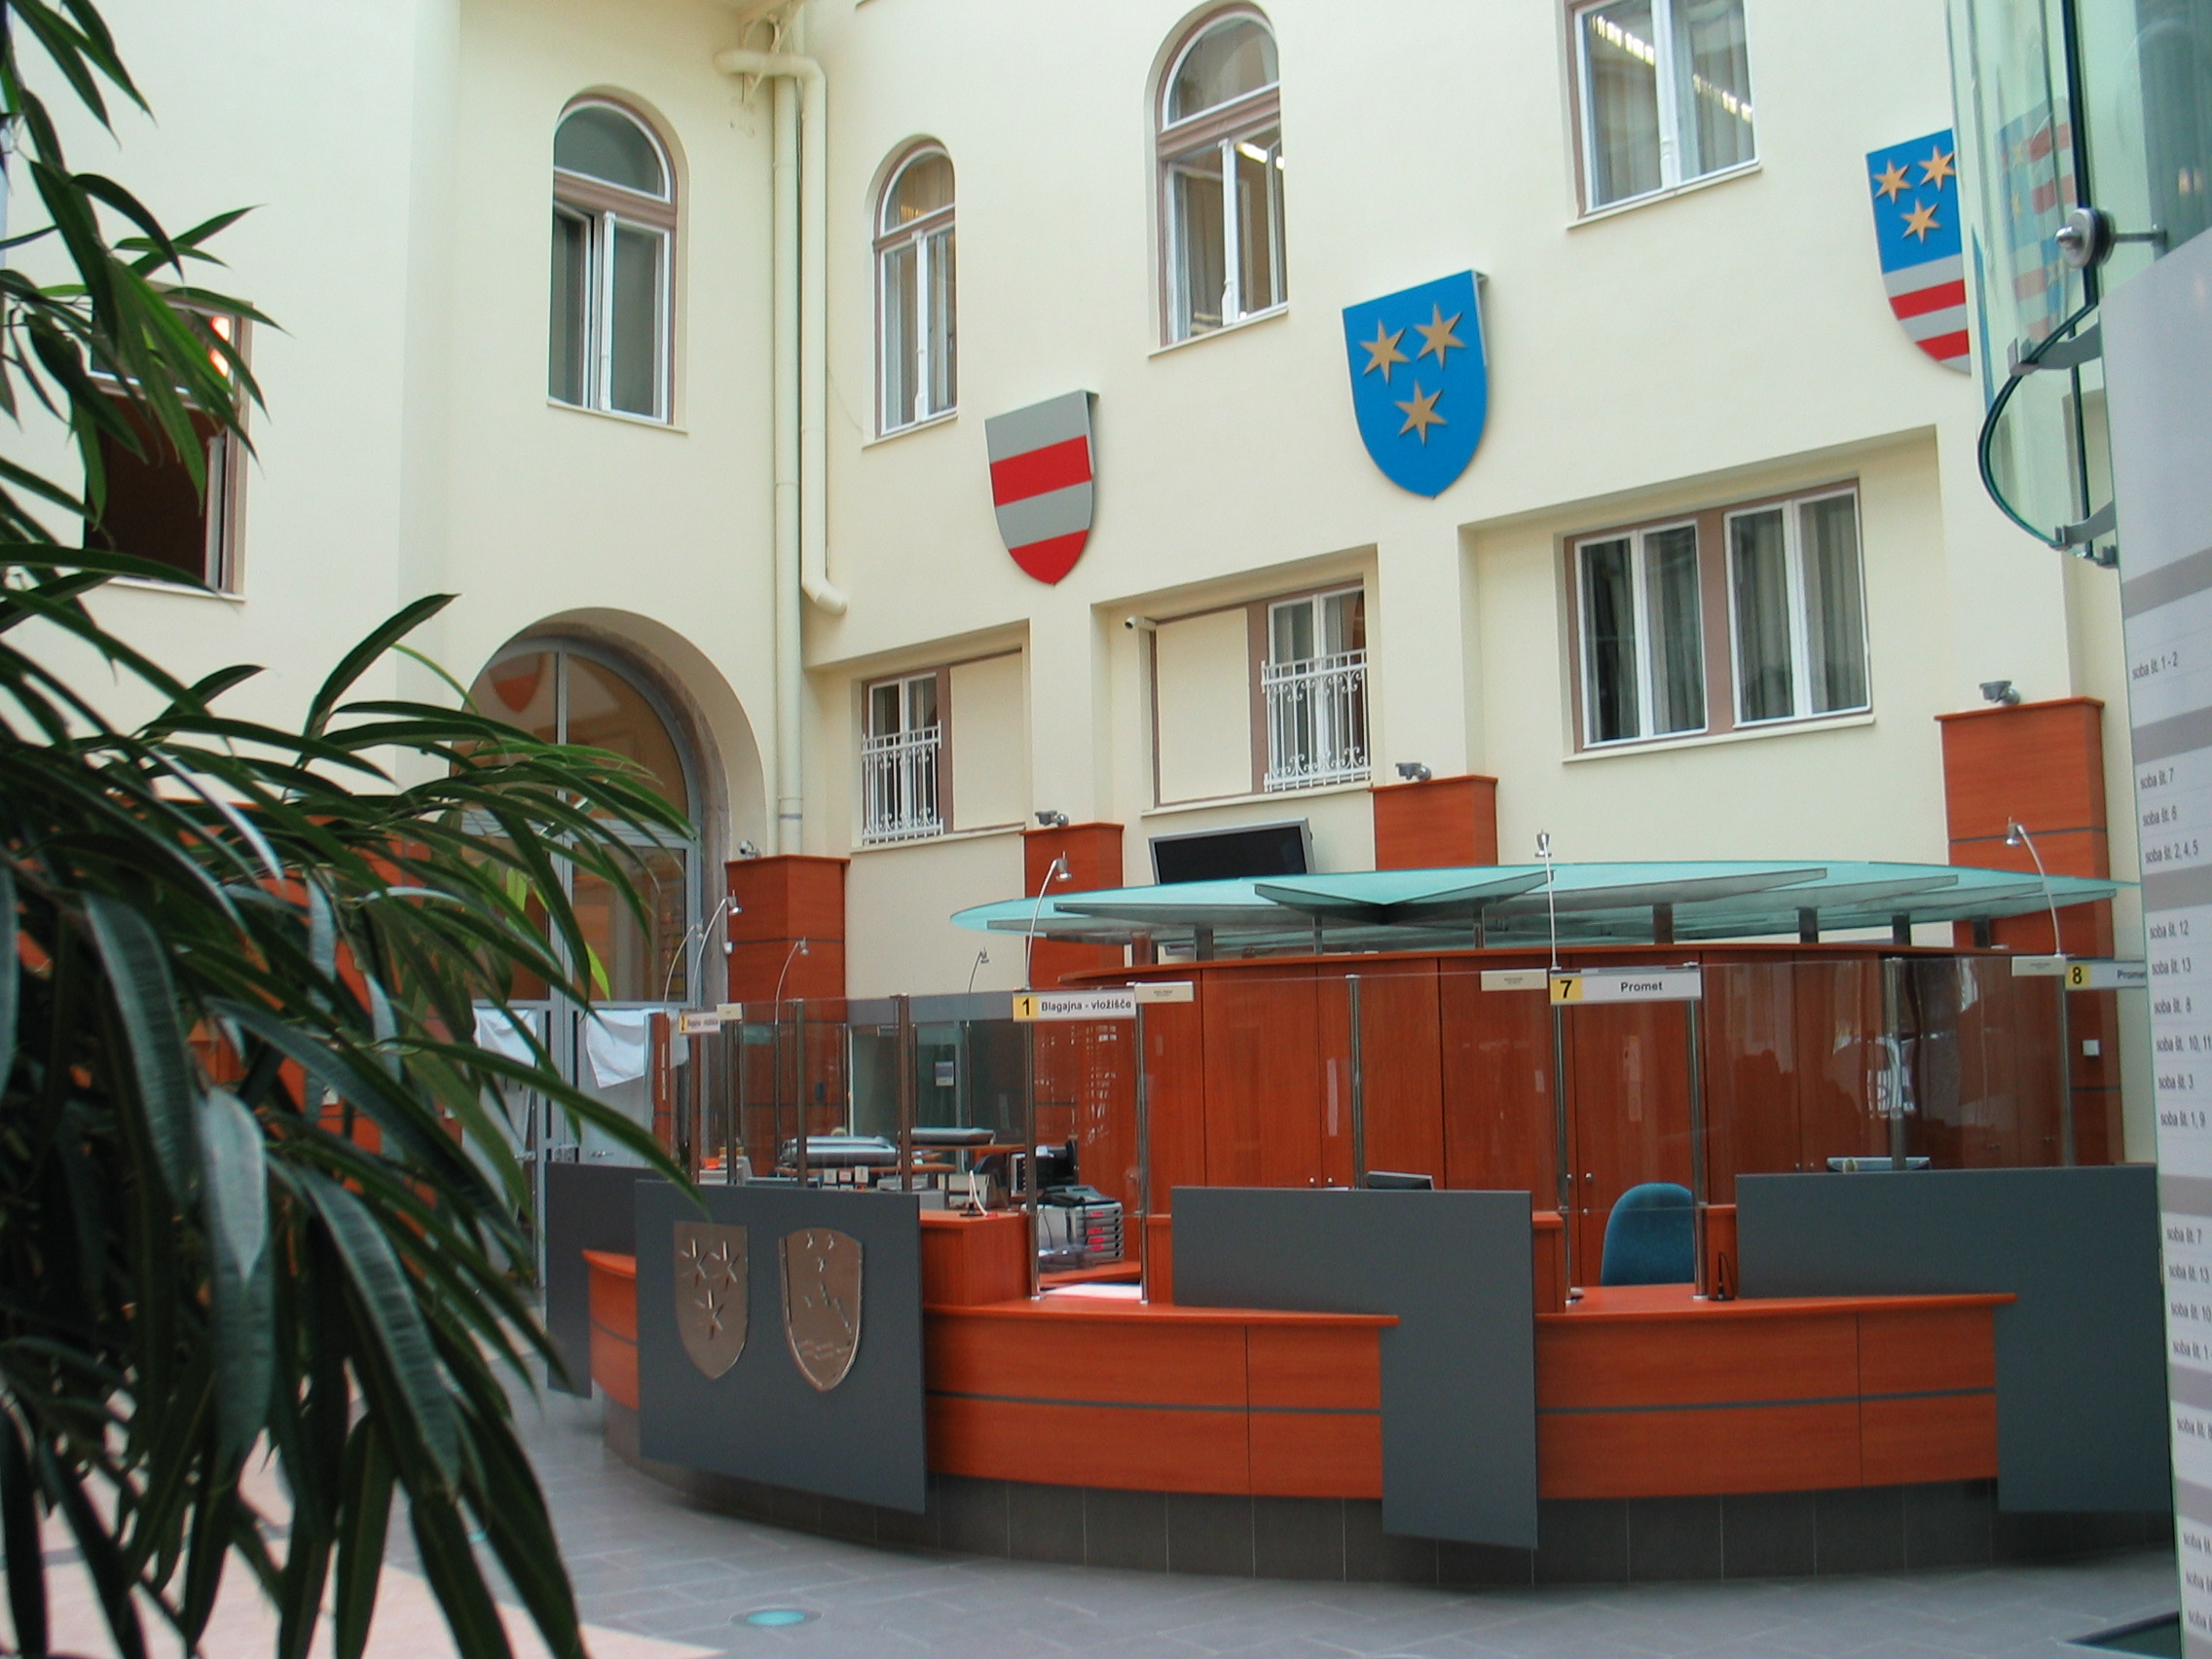 Main Administrative building in Celje